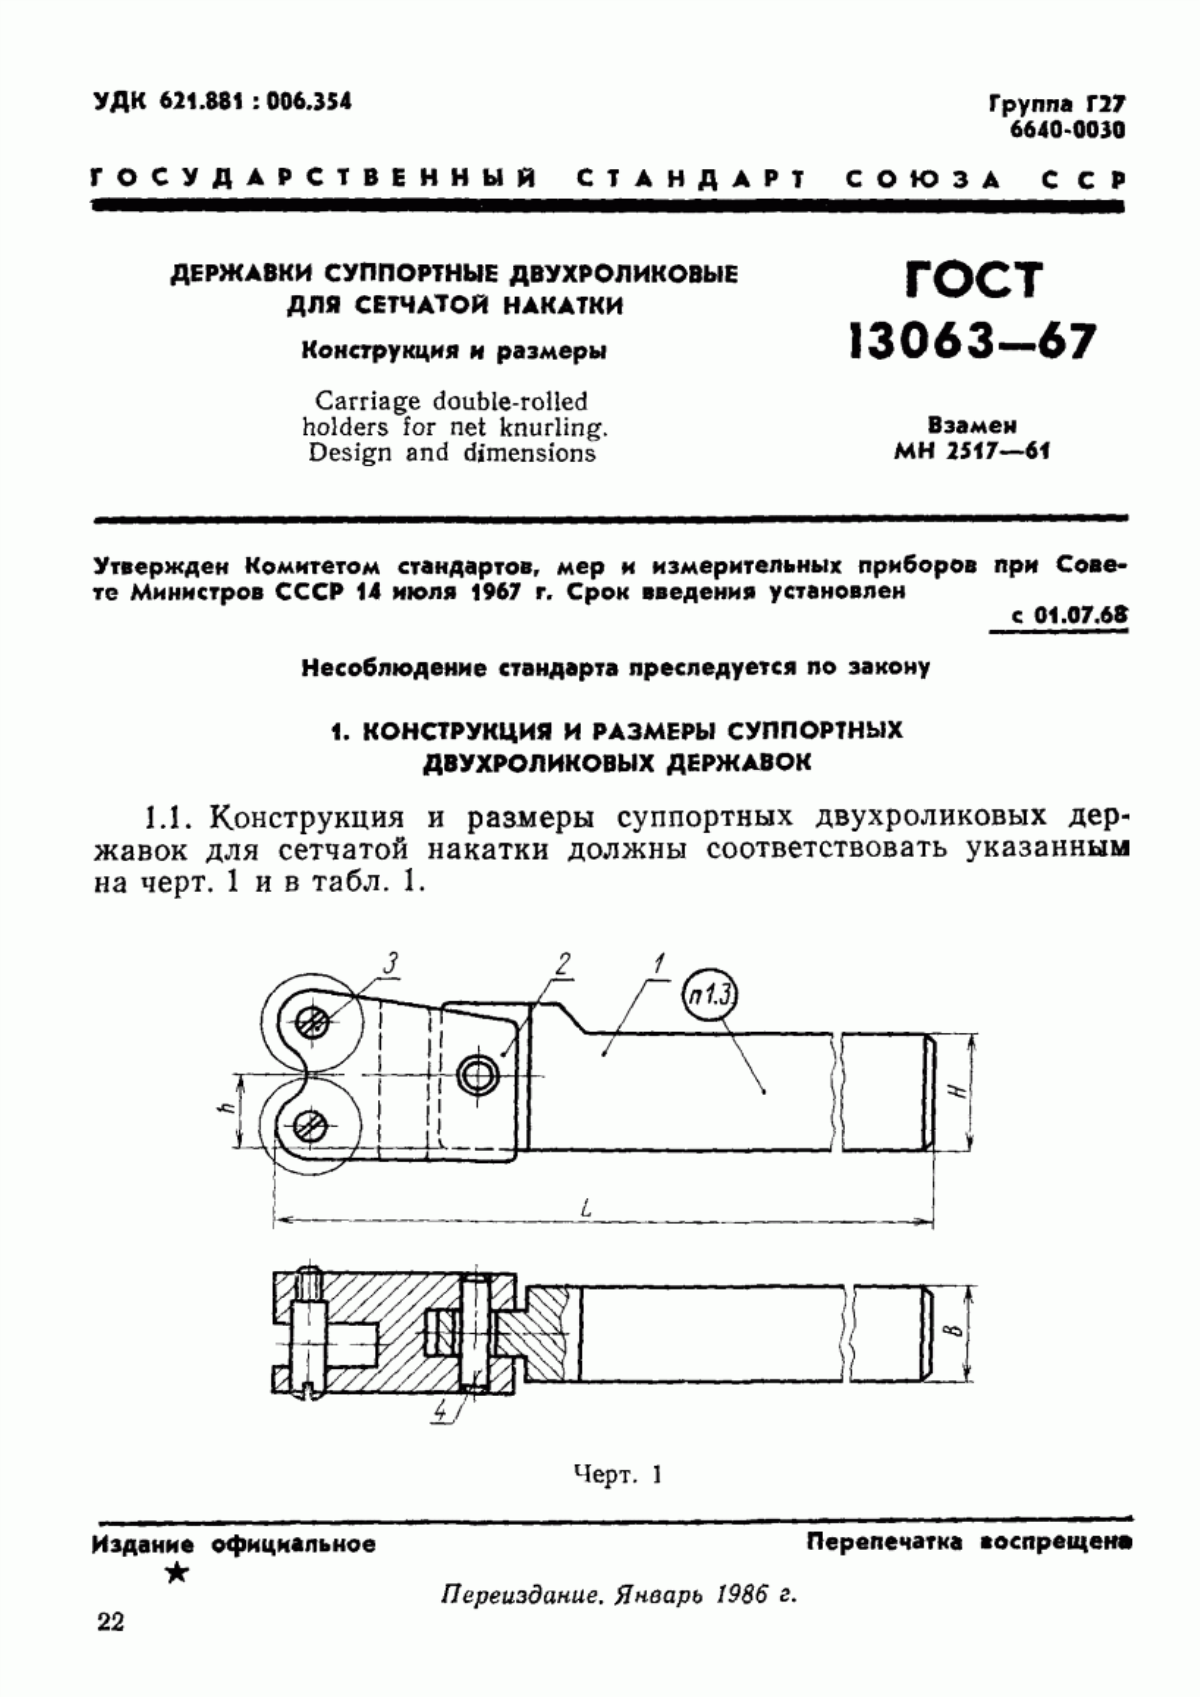 ГОСТ 13063-67 Державки суппортные двухроликовые для сетчатой накатки. Конструкция и размеры